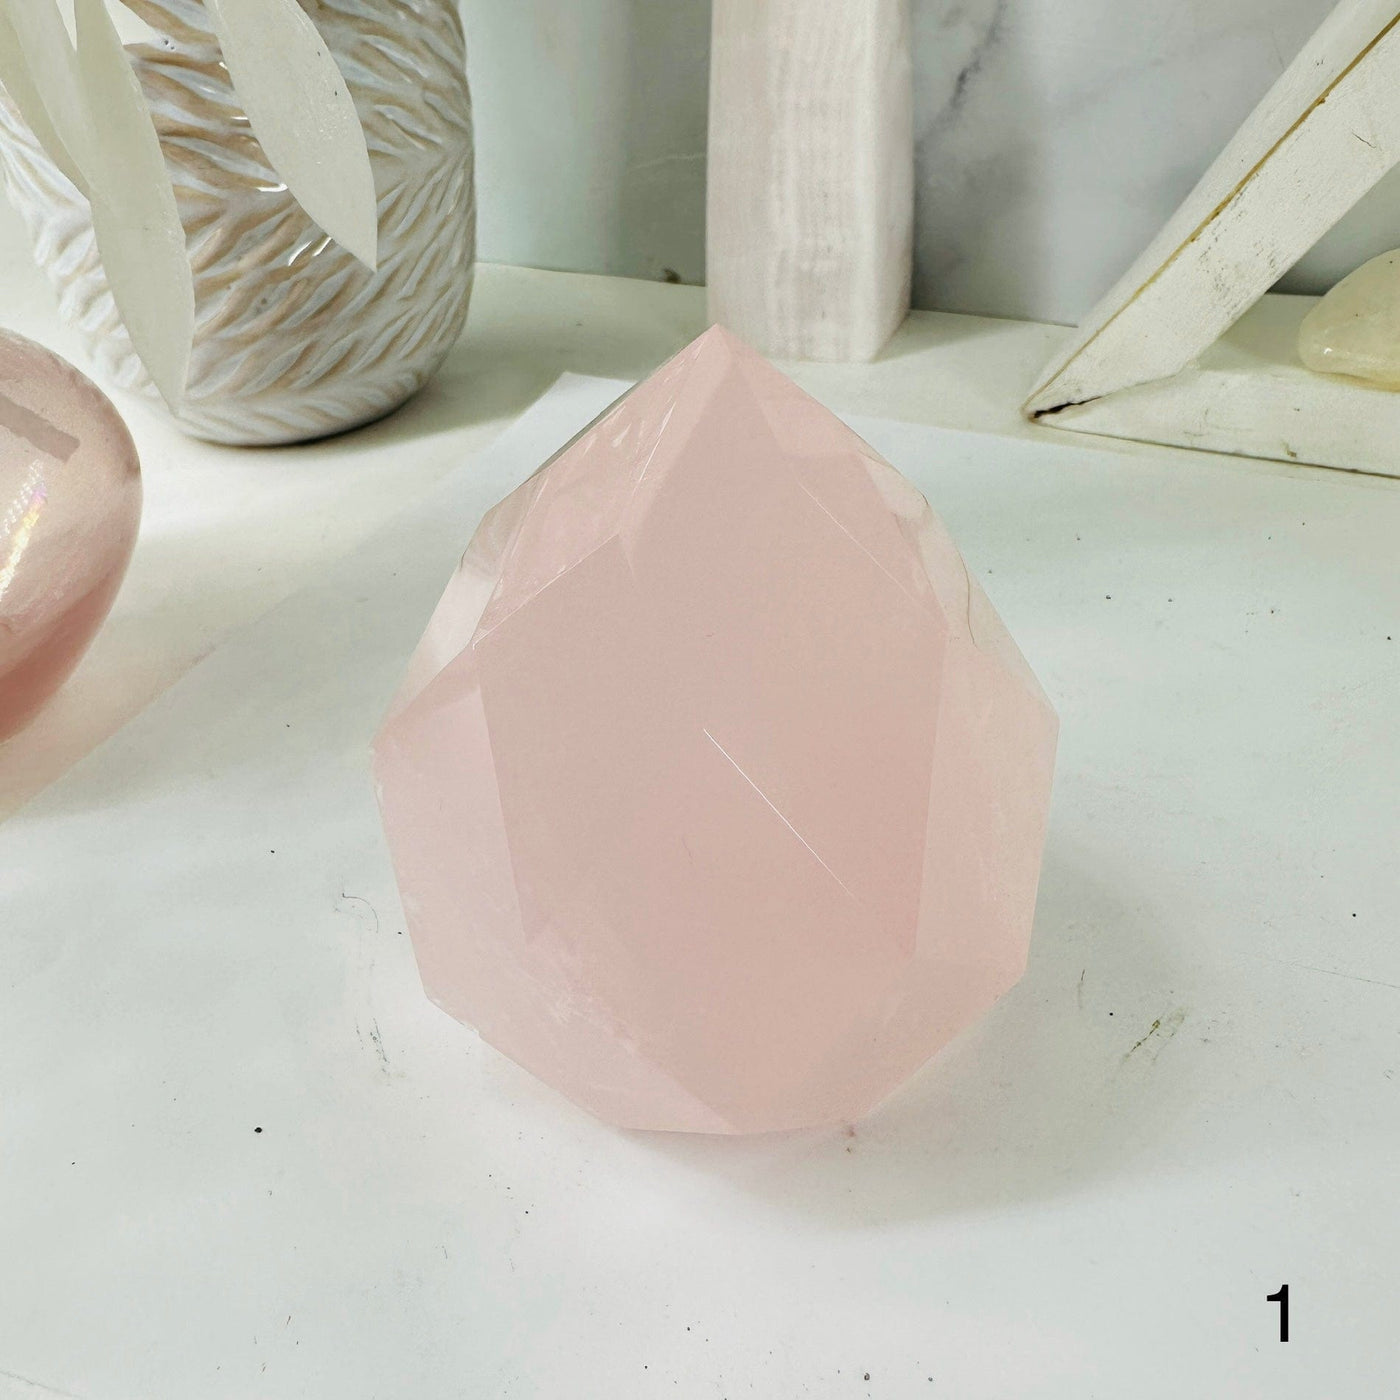  Rose Quartz Faceted Crystal Egg Point - You Choose - variant 1 labeled